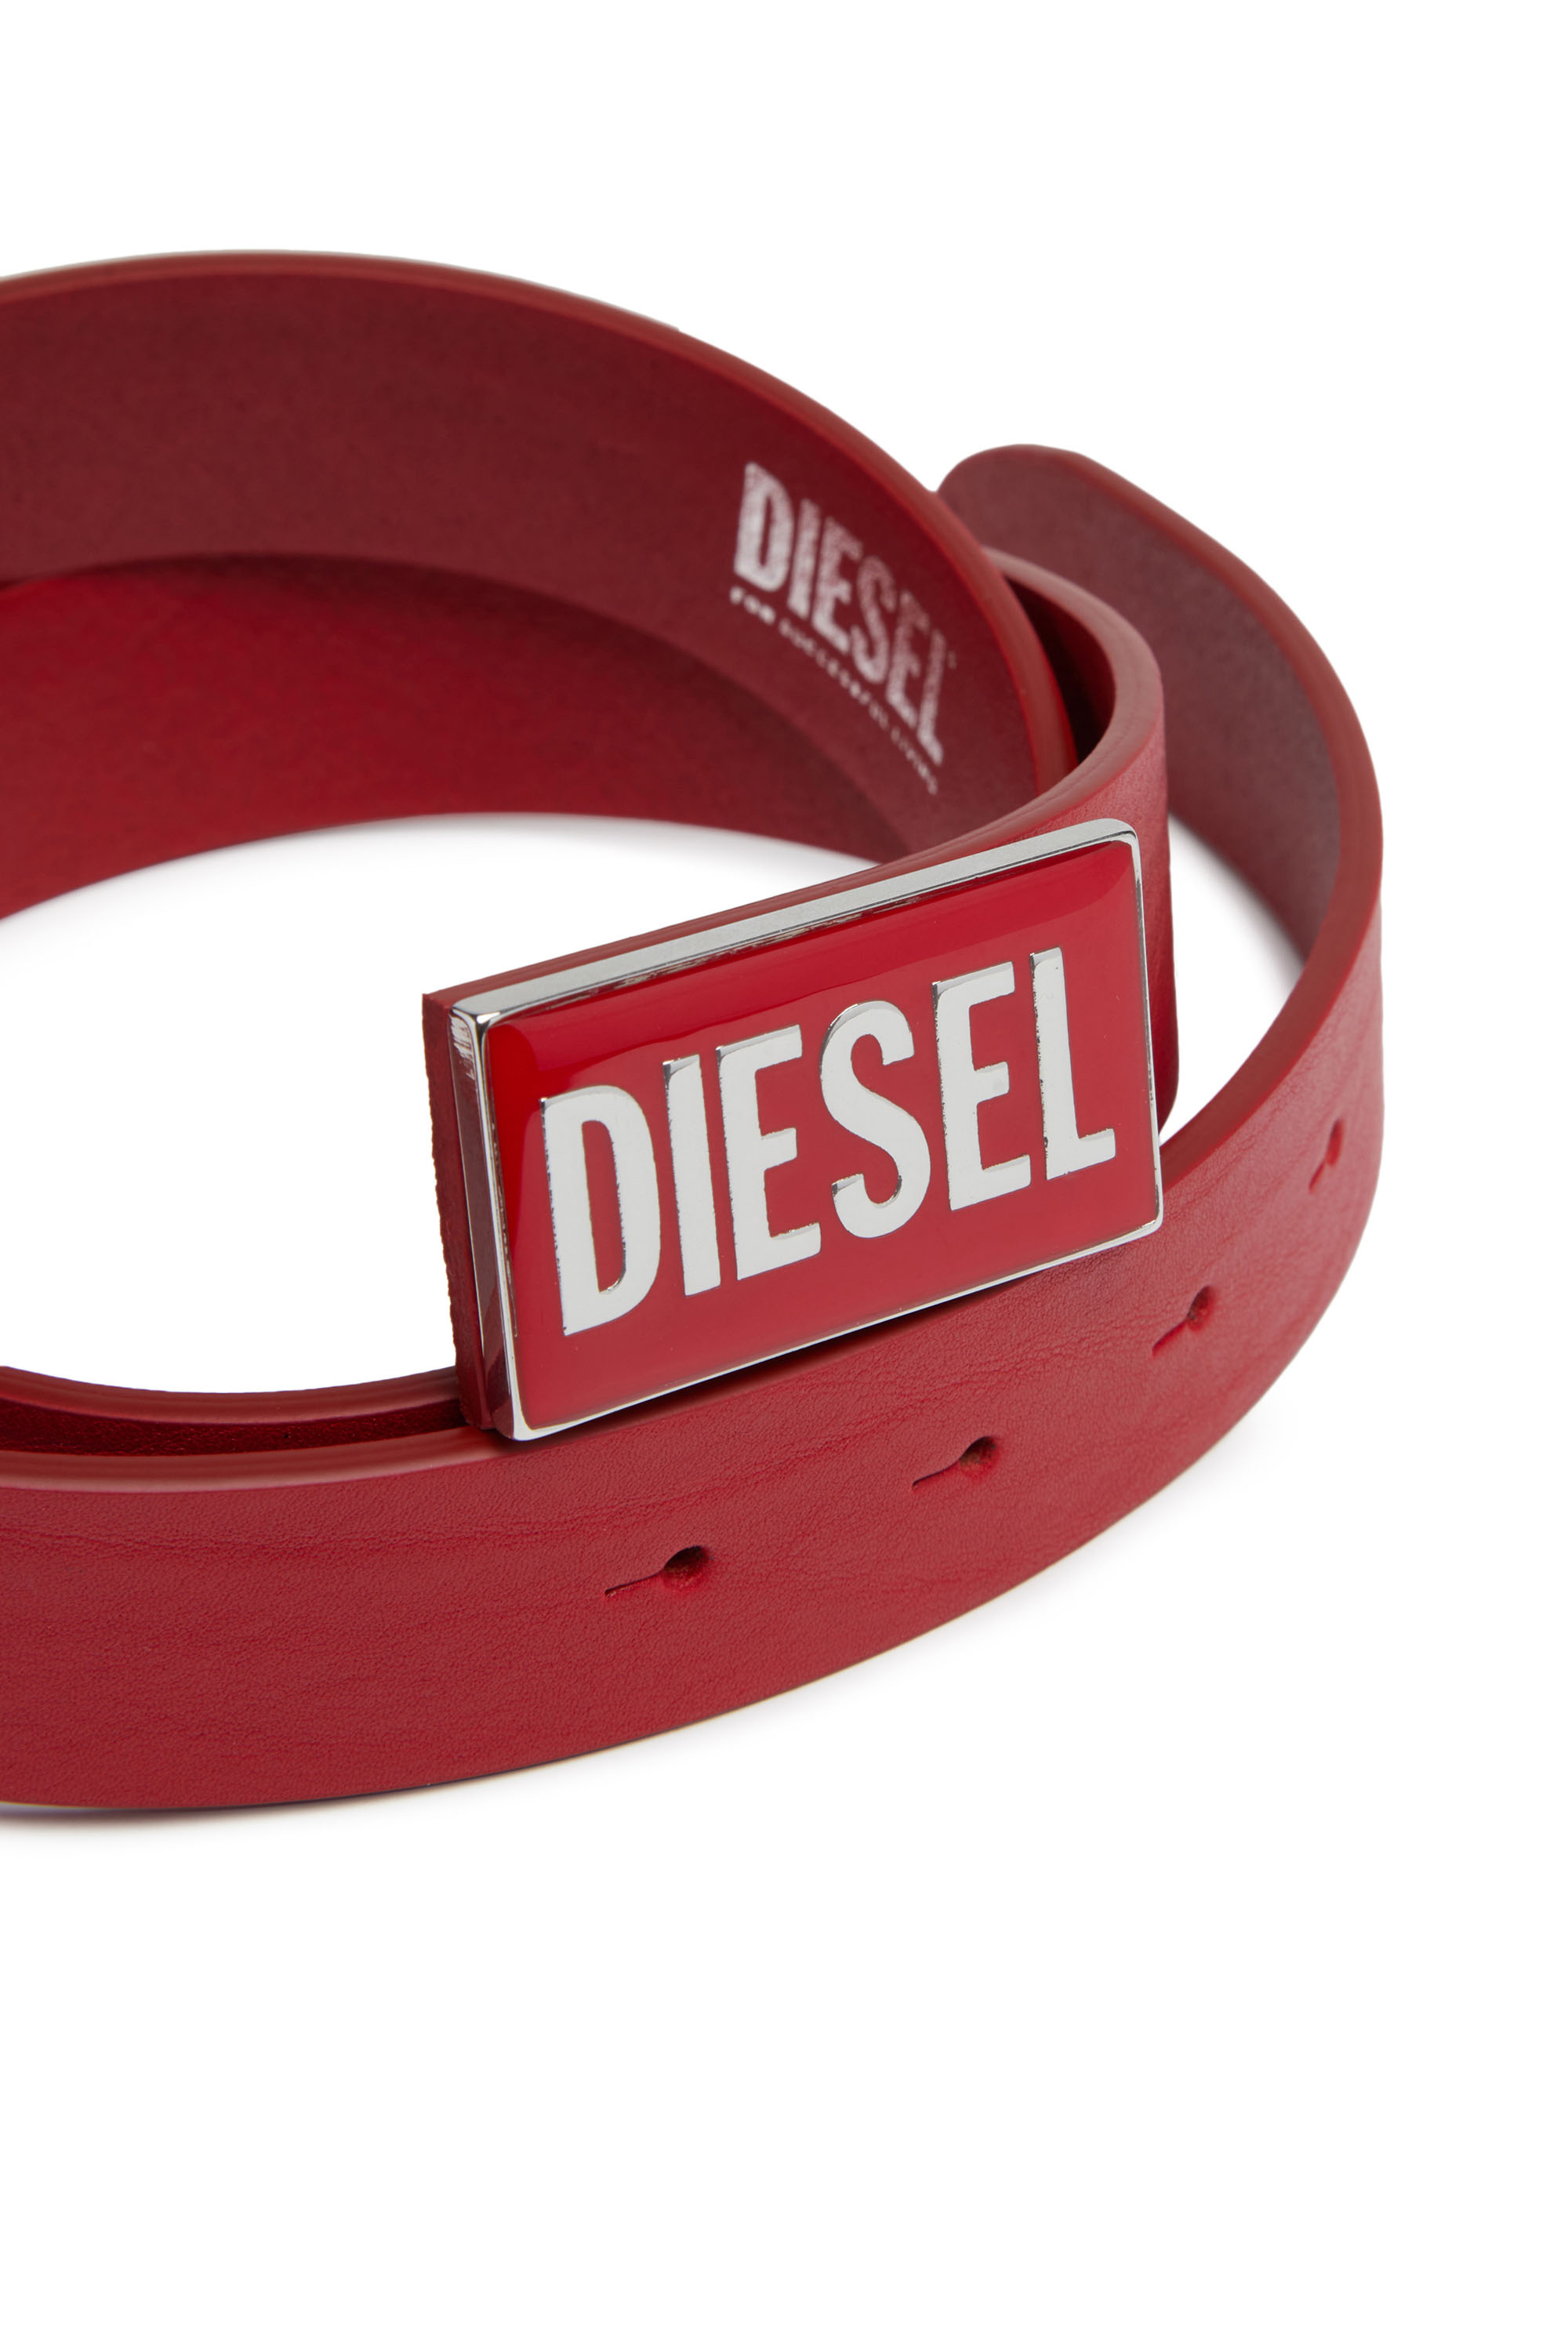 Diesel - B-GLOSSY, Red - Image 3